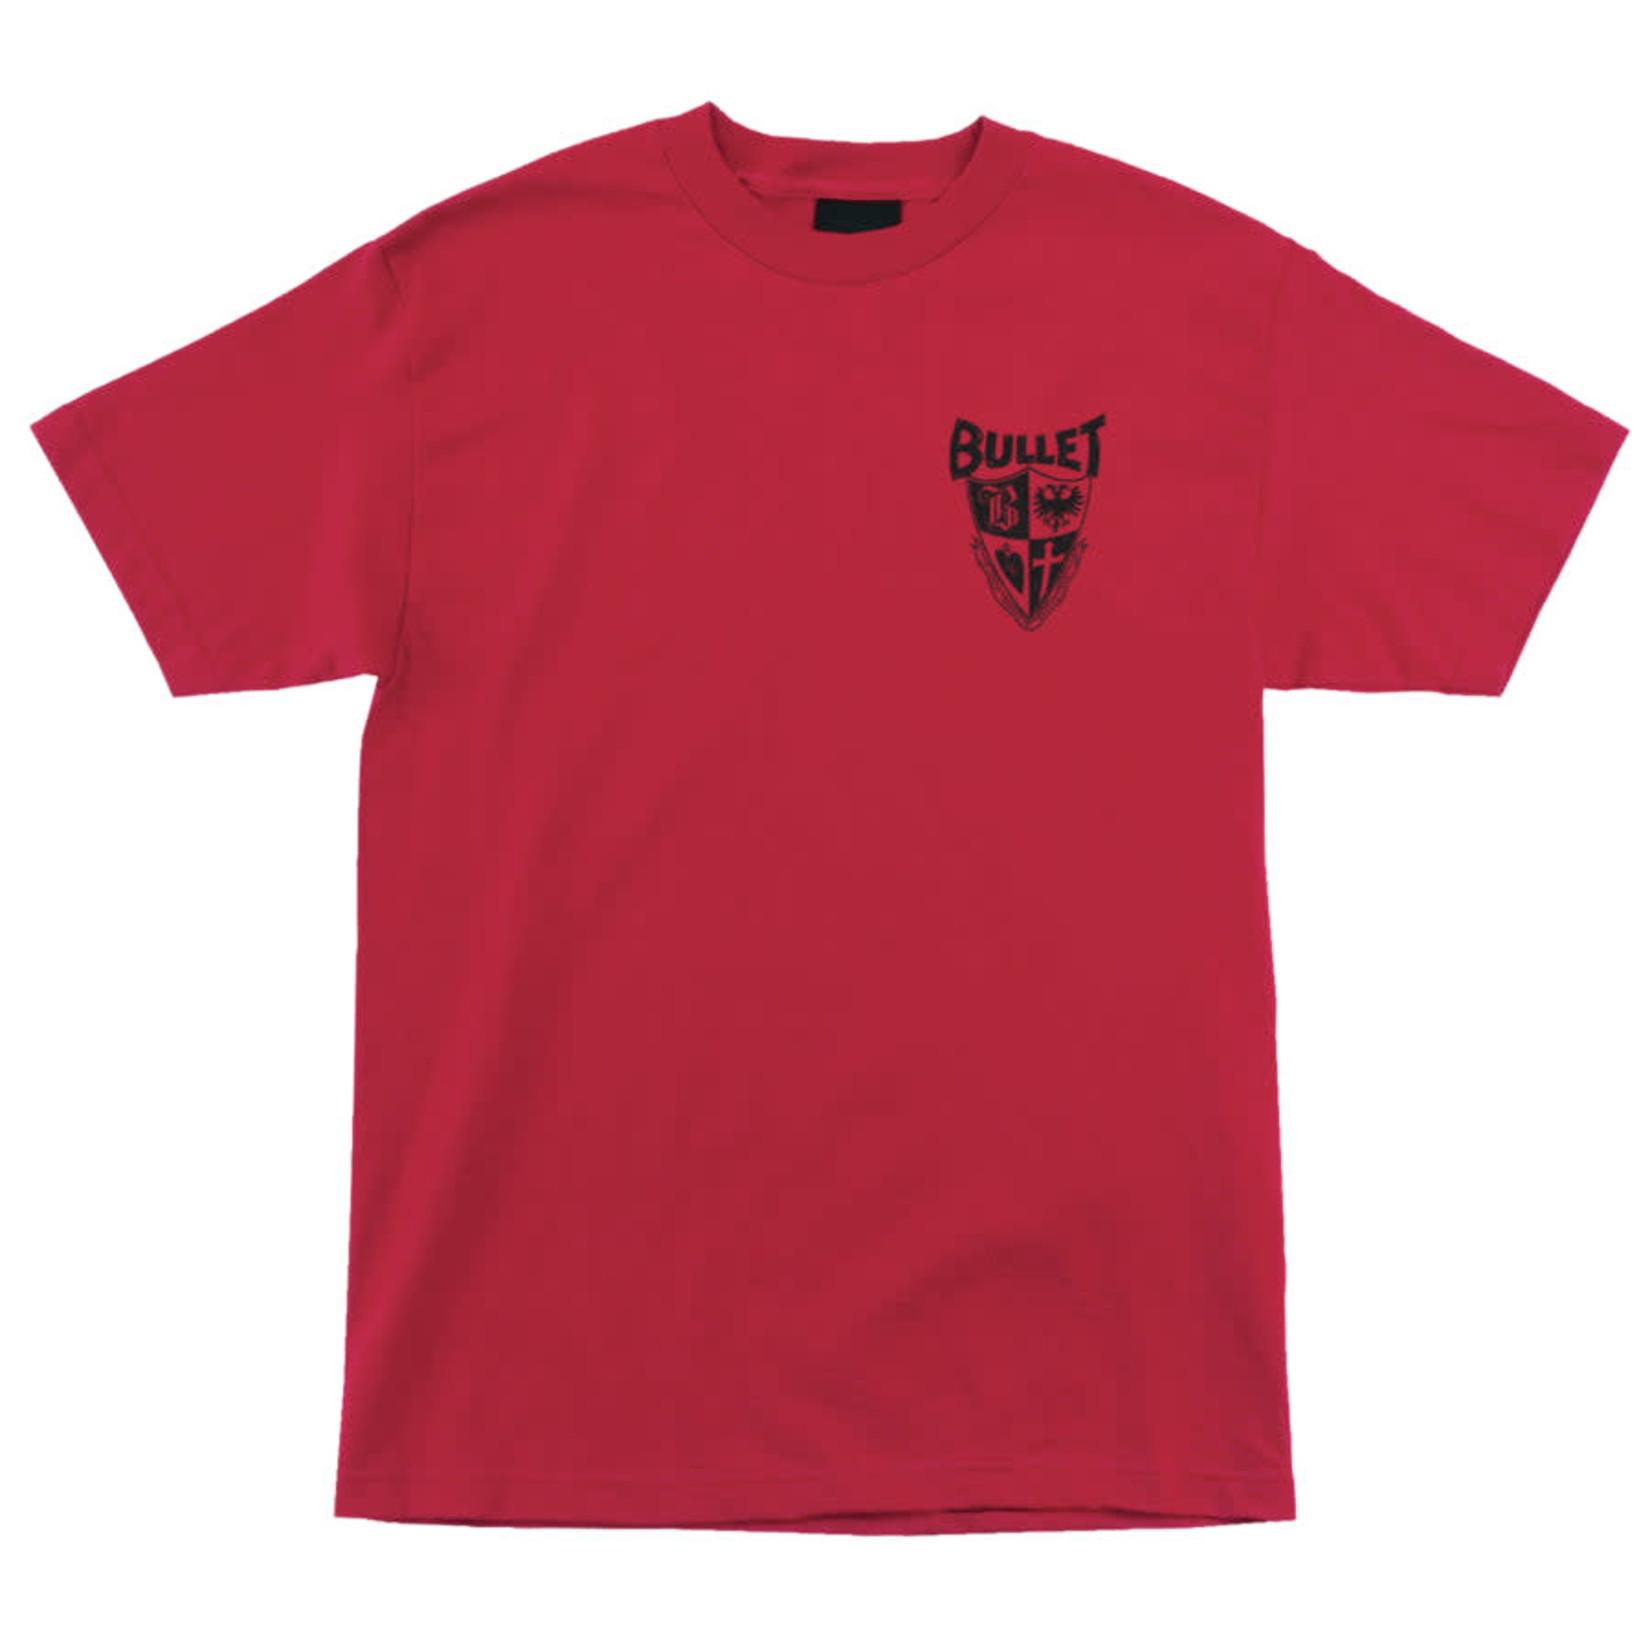 Santa Cruz Skateboards Santa Cruz Bullet 66 SS T-Shirt - Red